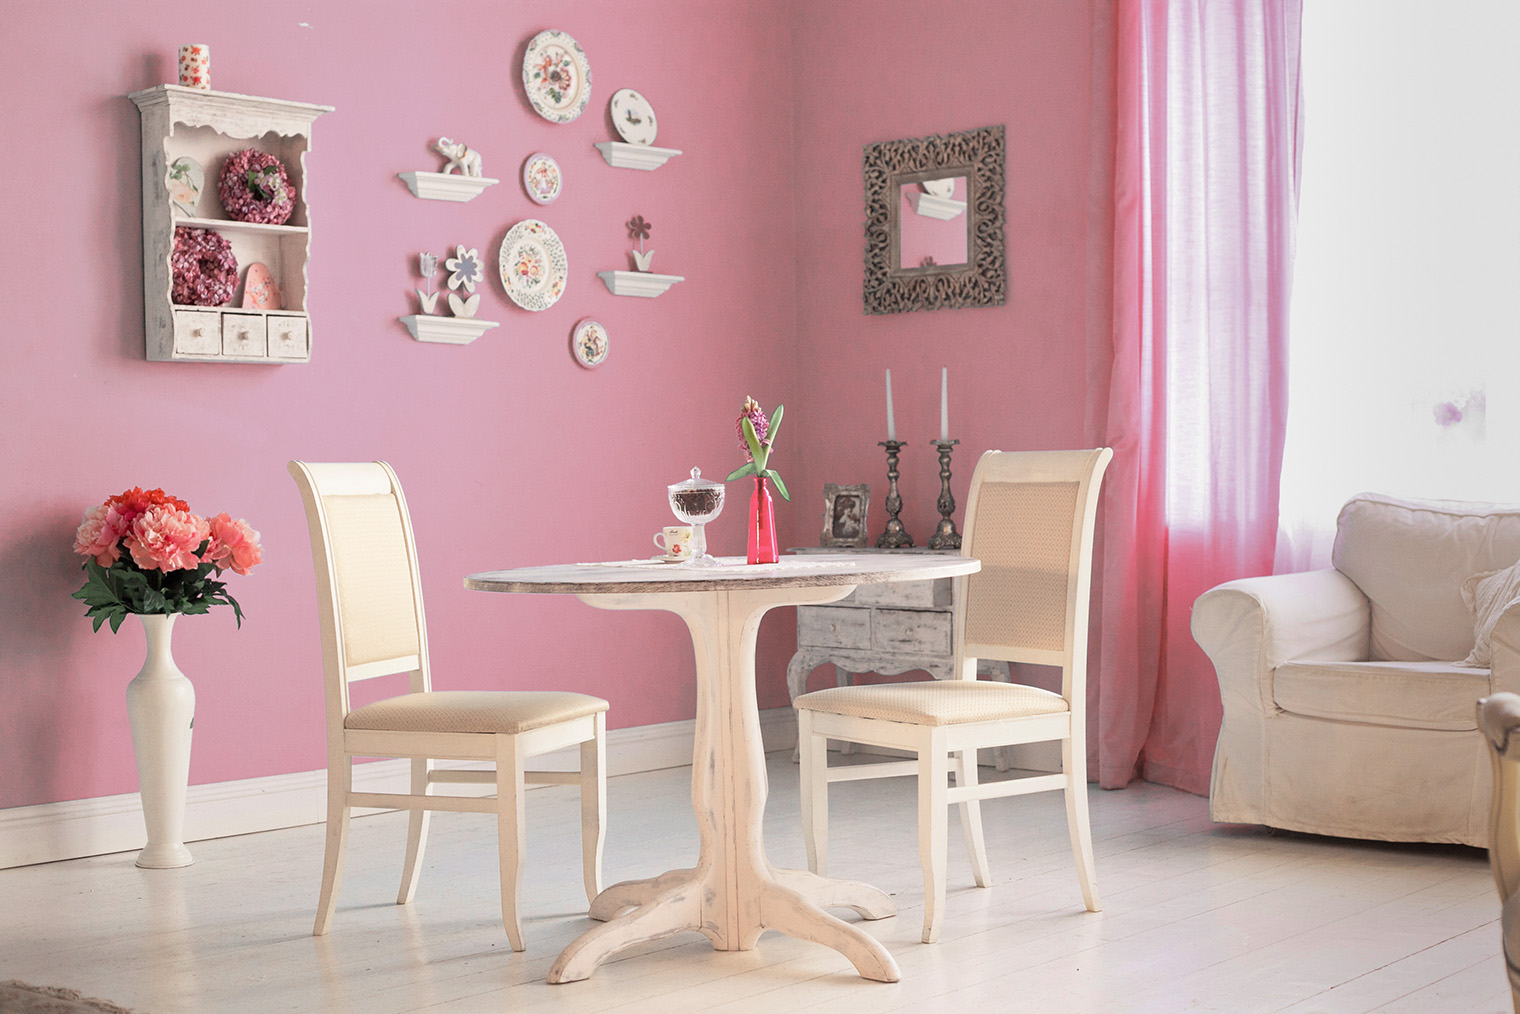 Розовый создает впечатление несерьезного интерьера. Фотография: Lapina / Shutterstock / FOTODOM